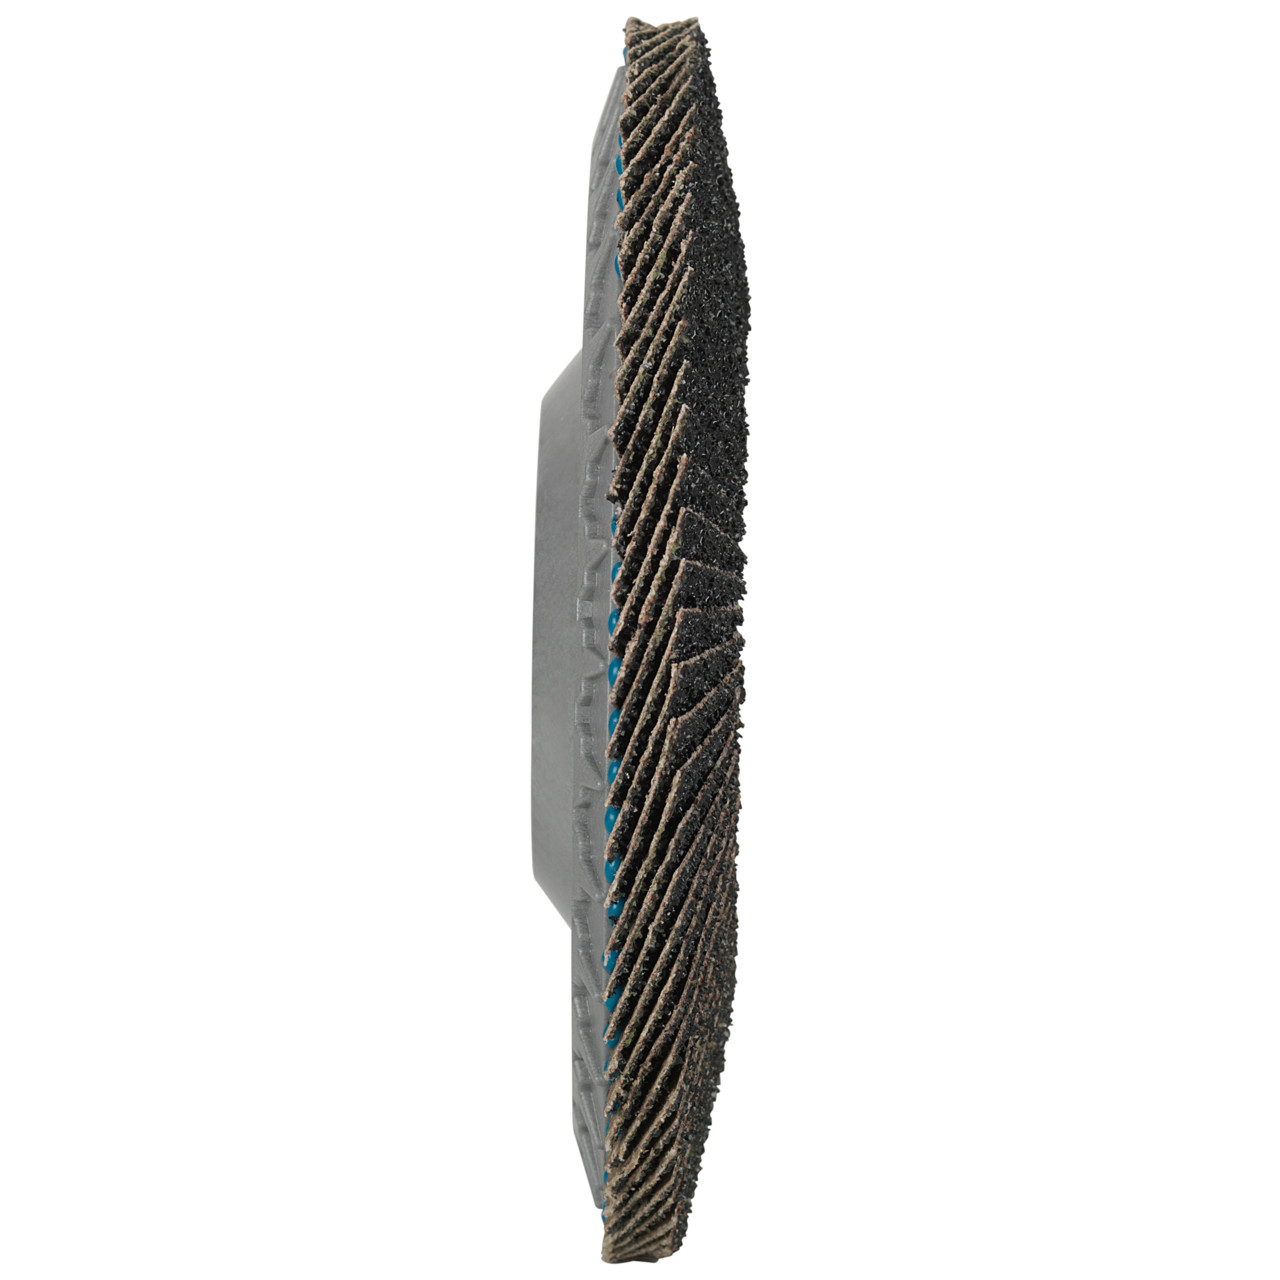 Tyrolit Rondelle éventail DxH 115x22,23 LONGLIFE C-TRIM pour acier et acier inoxydable, P60, forme : 28N - version droite (corps de support en plastique), art. 34239192